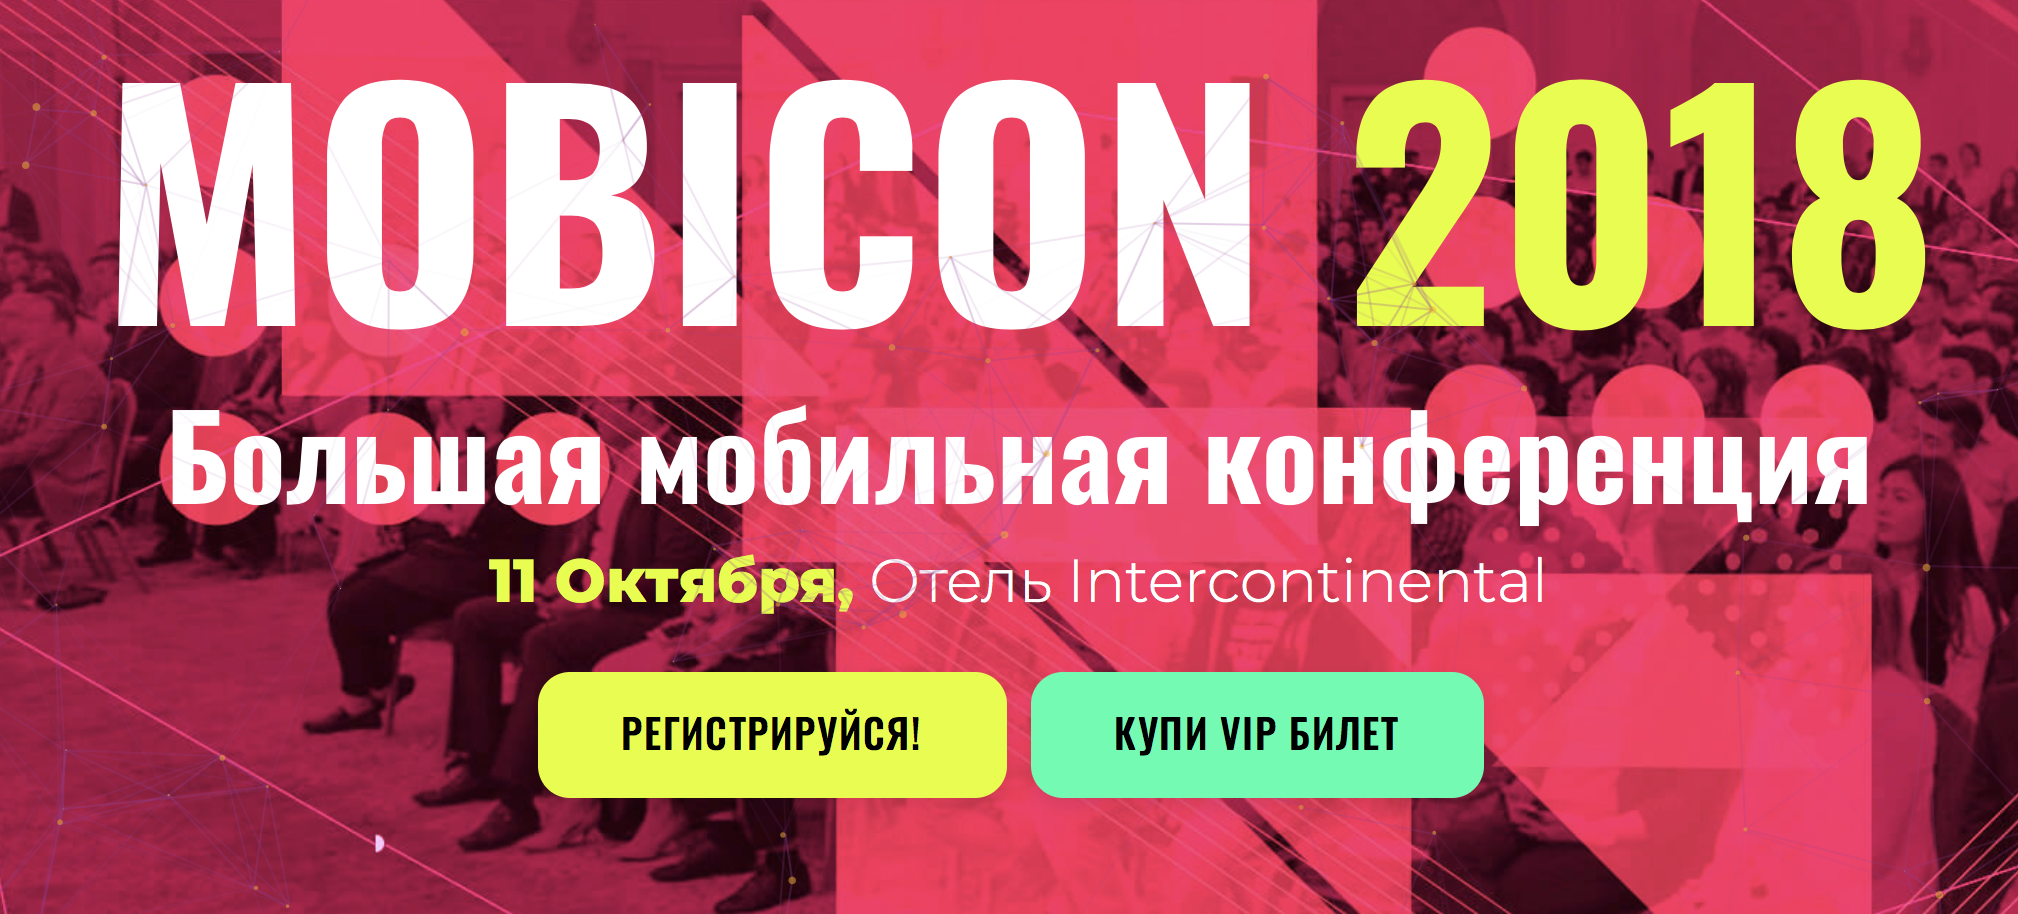 Запущен официальный сайт и регистрация на конференцию Mobicon 2018 в Ташкенте